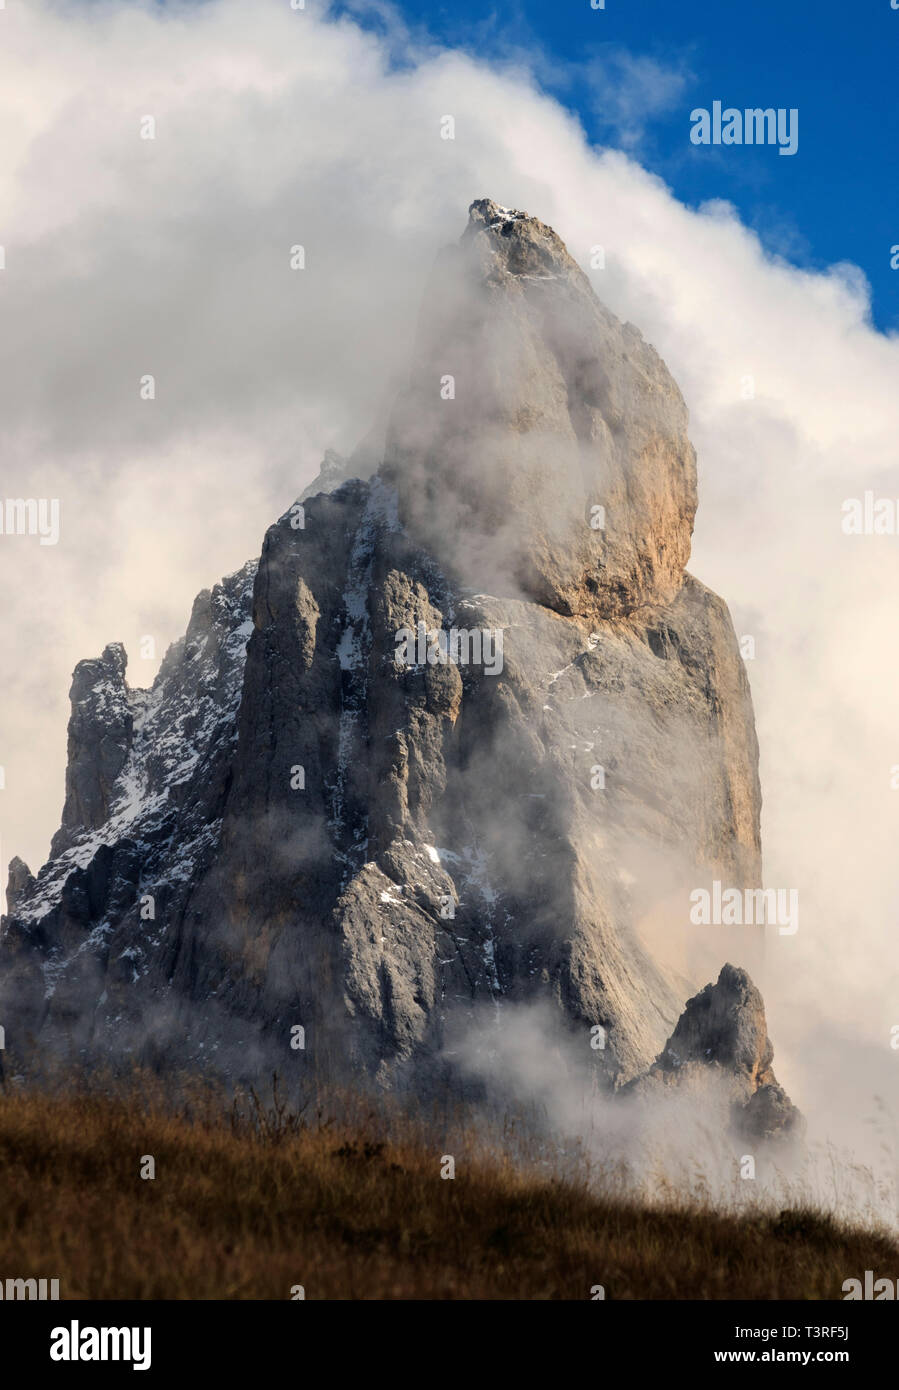 Il Cimon (letteralmente, grande vertice) della pala è la più famosa di picco il gruppo delle Pale di San Martino nelle Dolomiti, Italia. Per la sua particolare shap Foto Stock